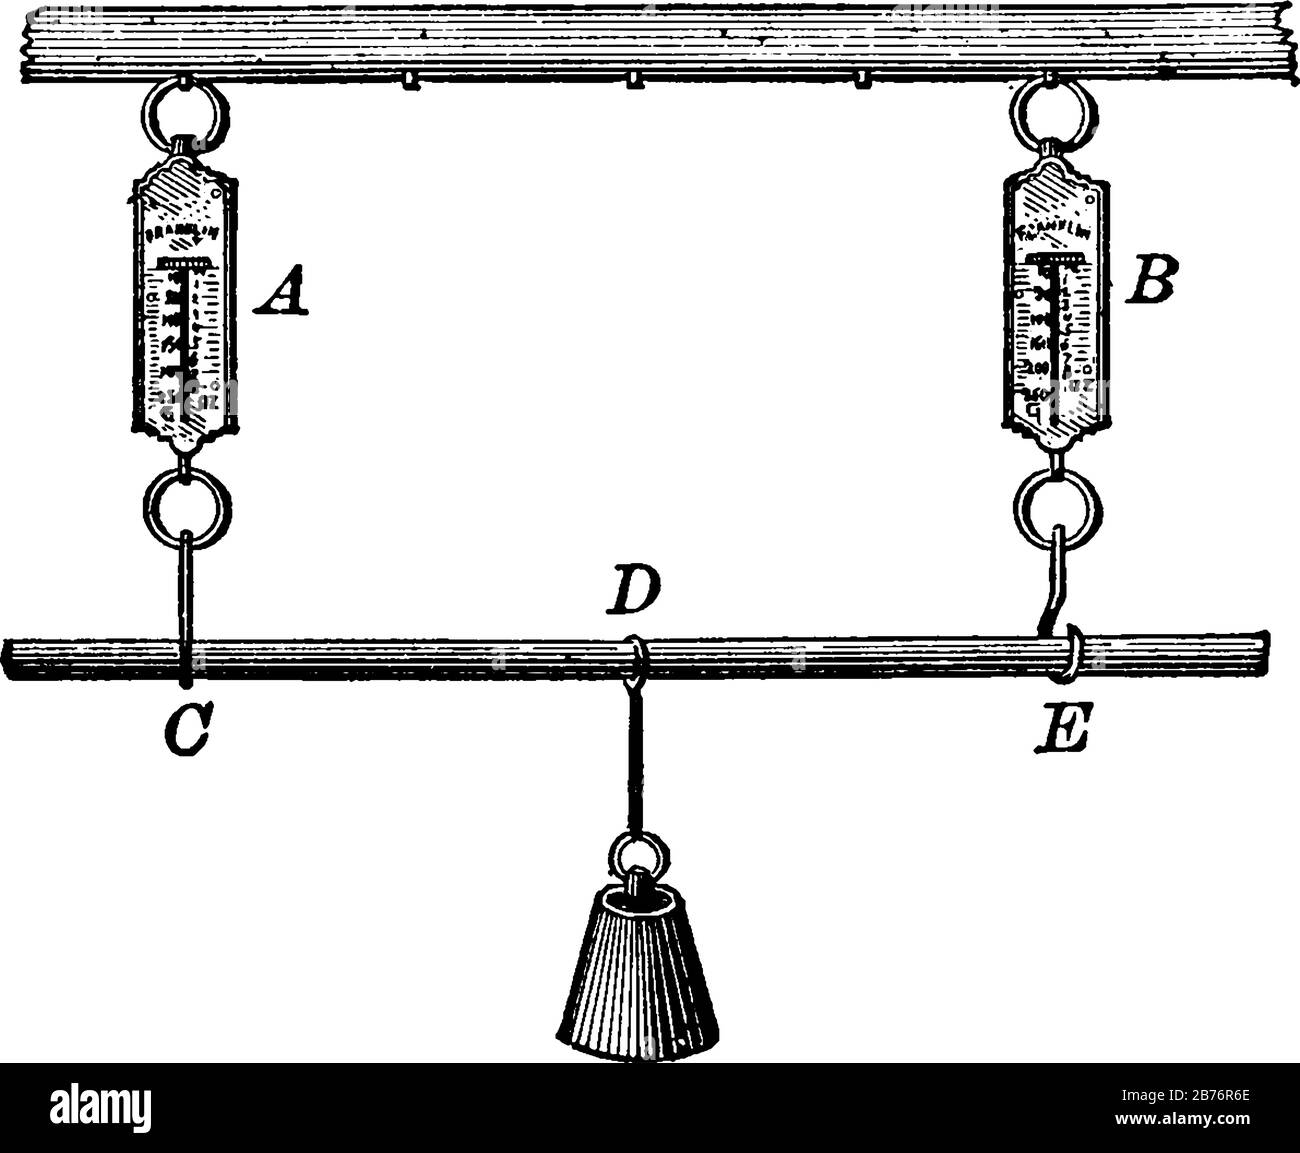 Una bilancia a molla o newton meter è un tipo di bilancia, disegno a linea  vintage o illustrazione di incisione Immagine e Vettoriale - Alamy